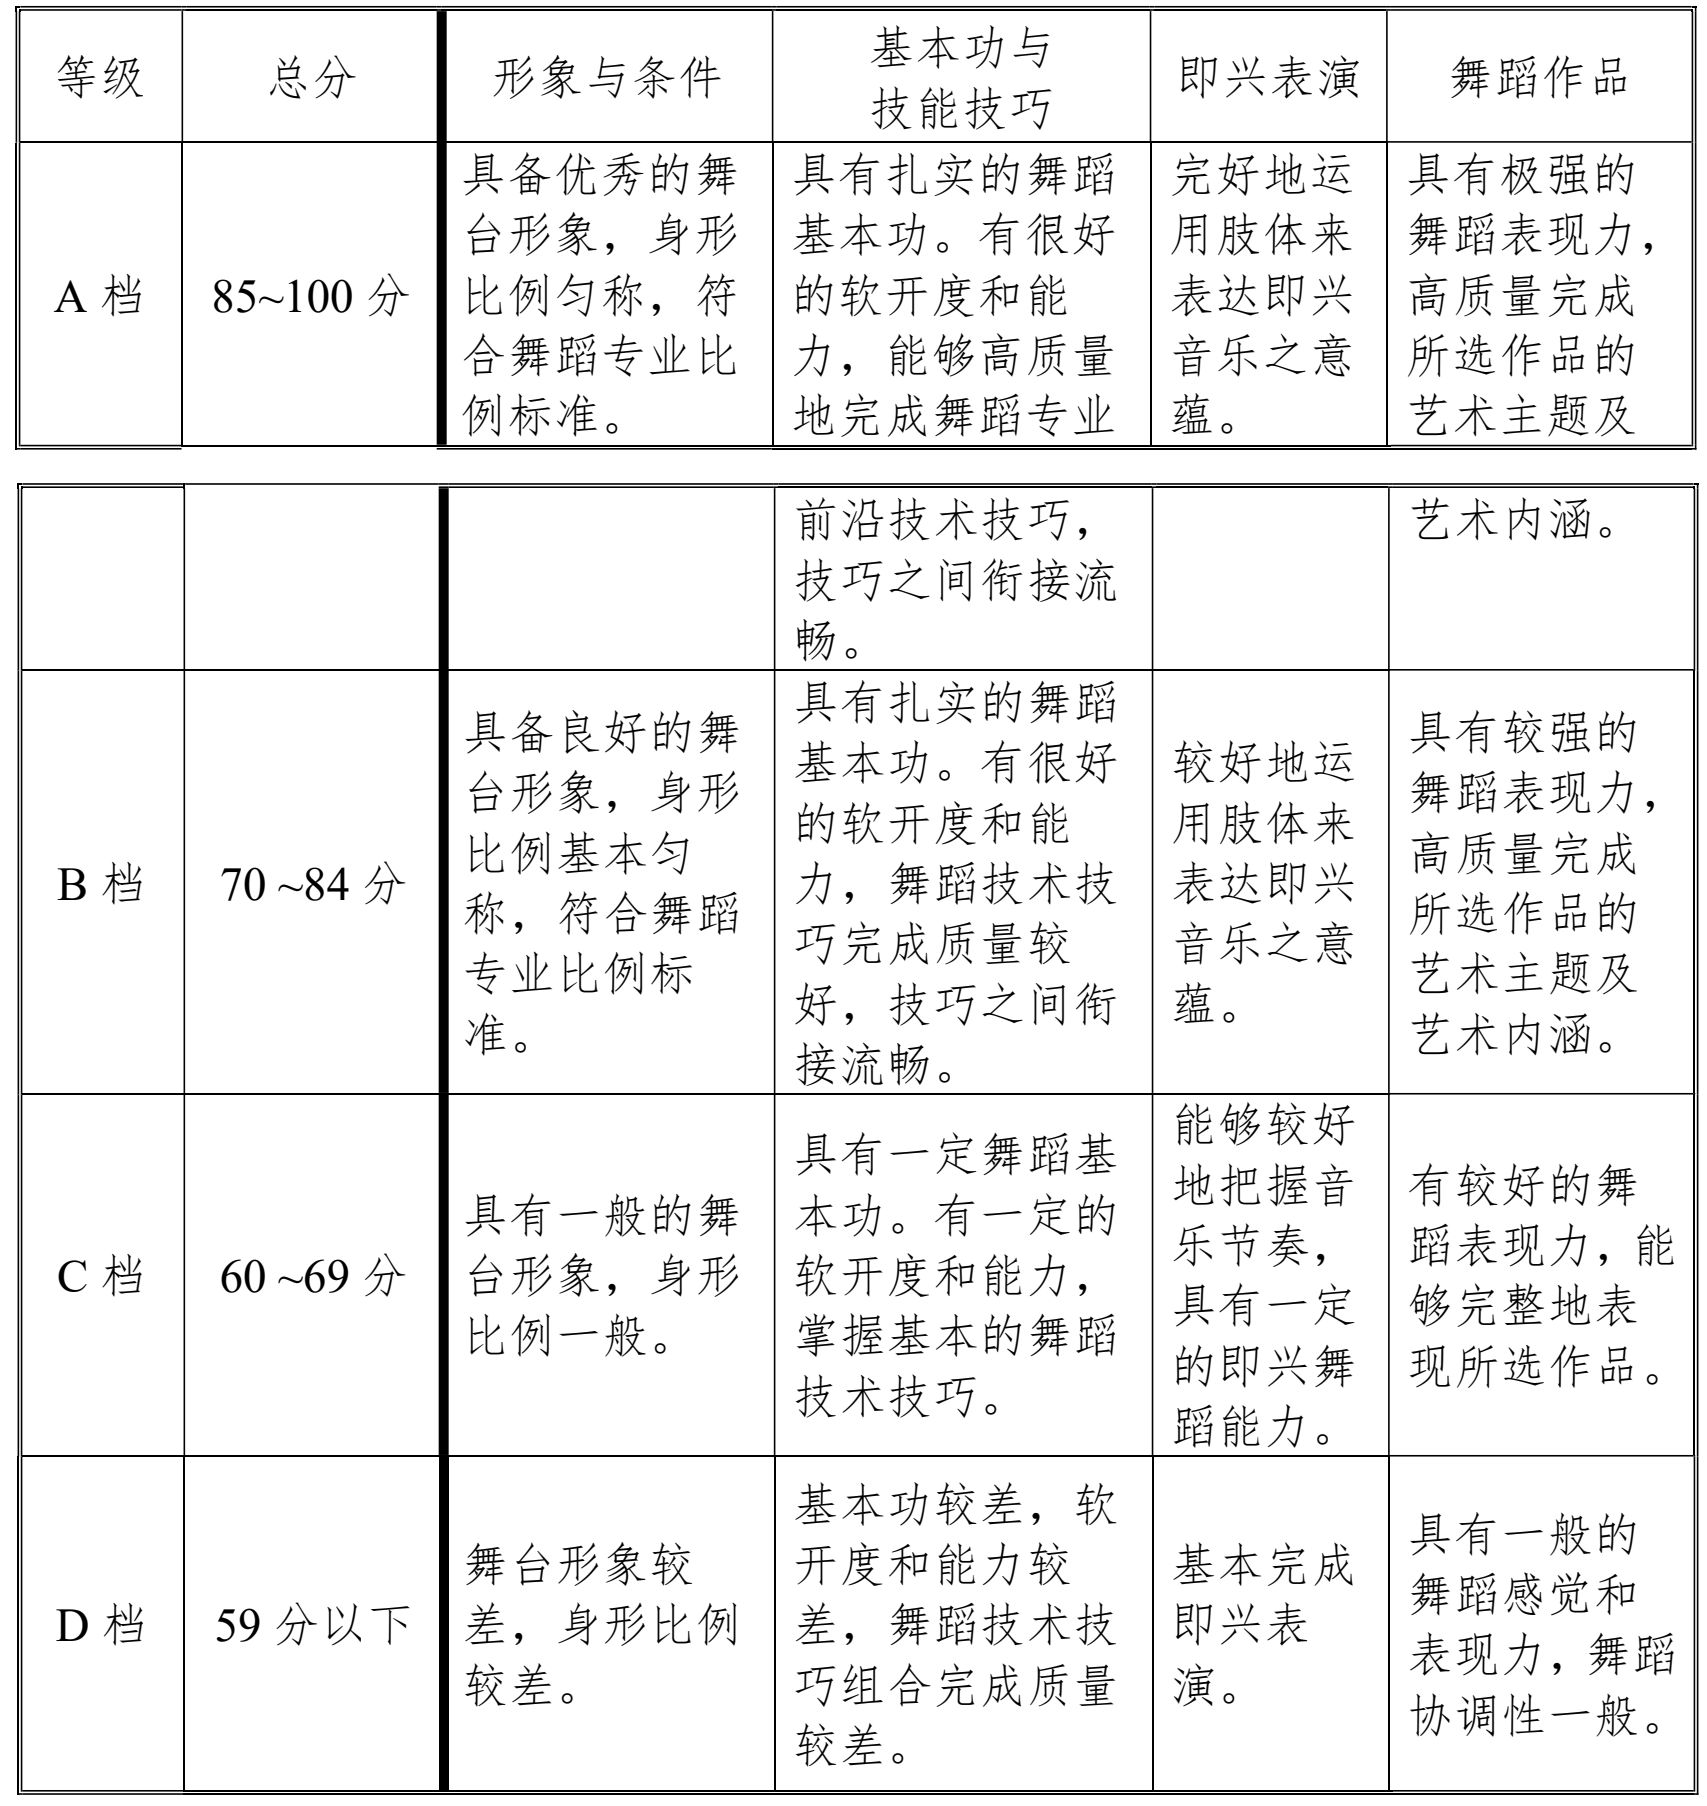 2022年天津市藝術類專業統一考試 舞蹈學類專業考試大綱 